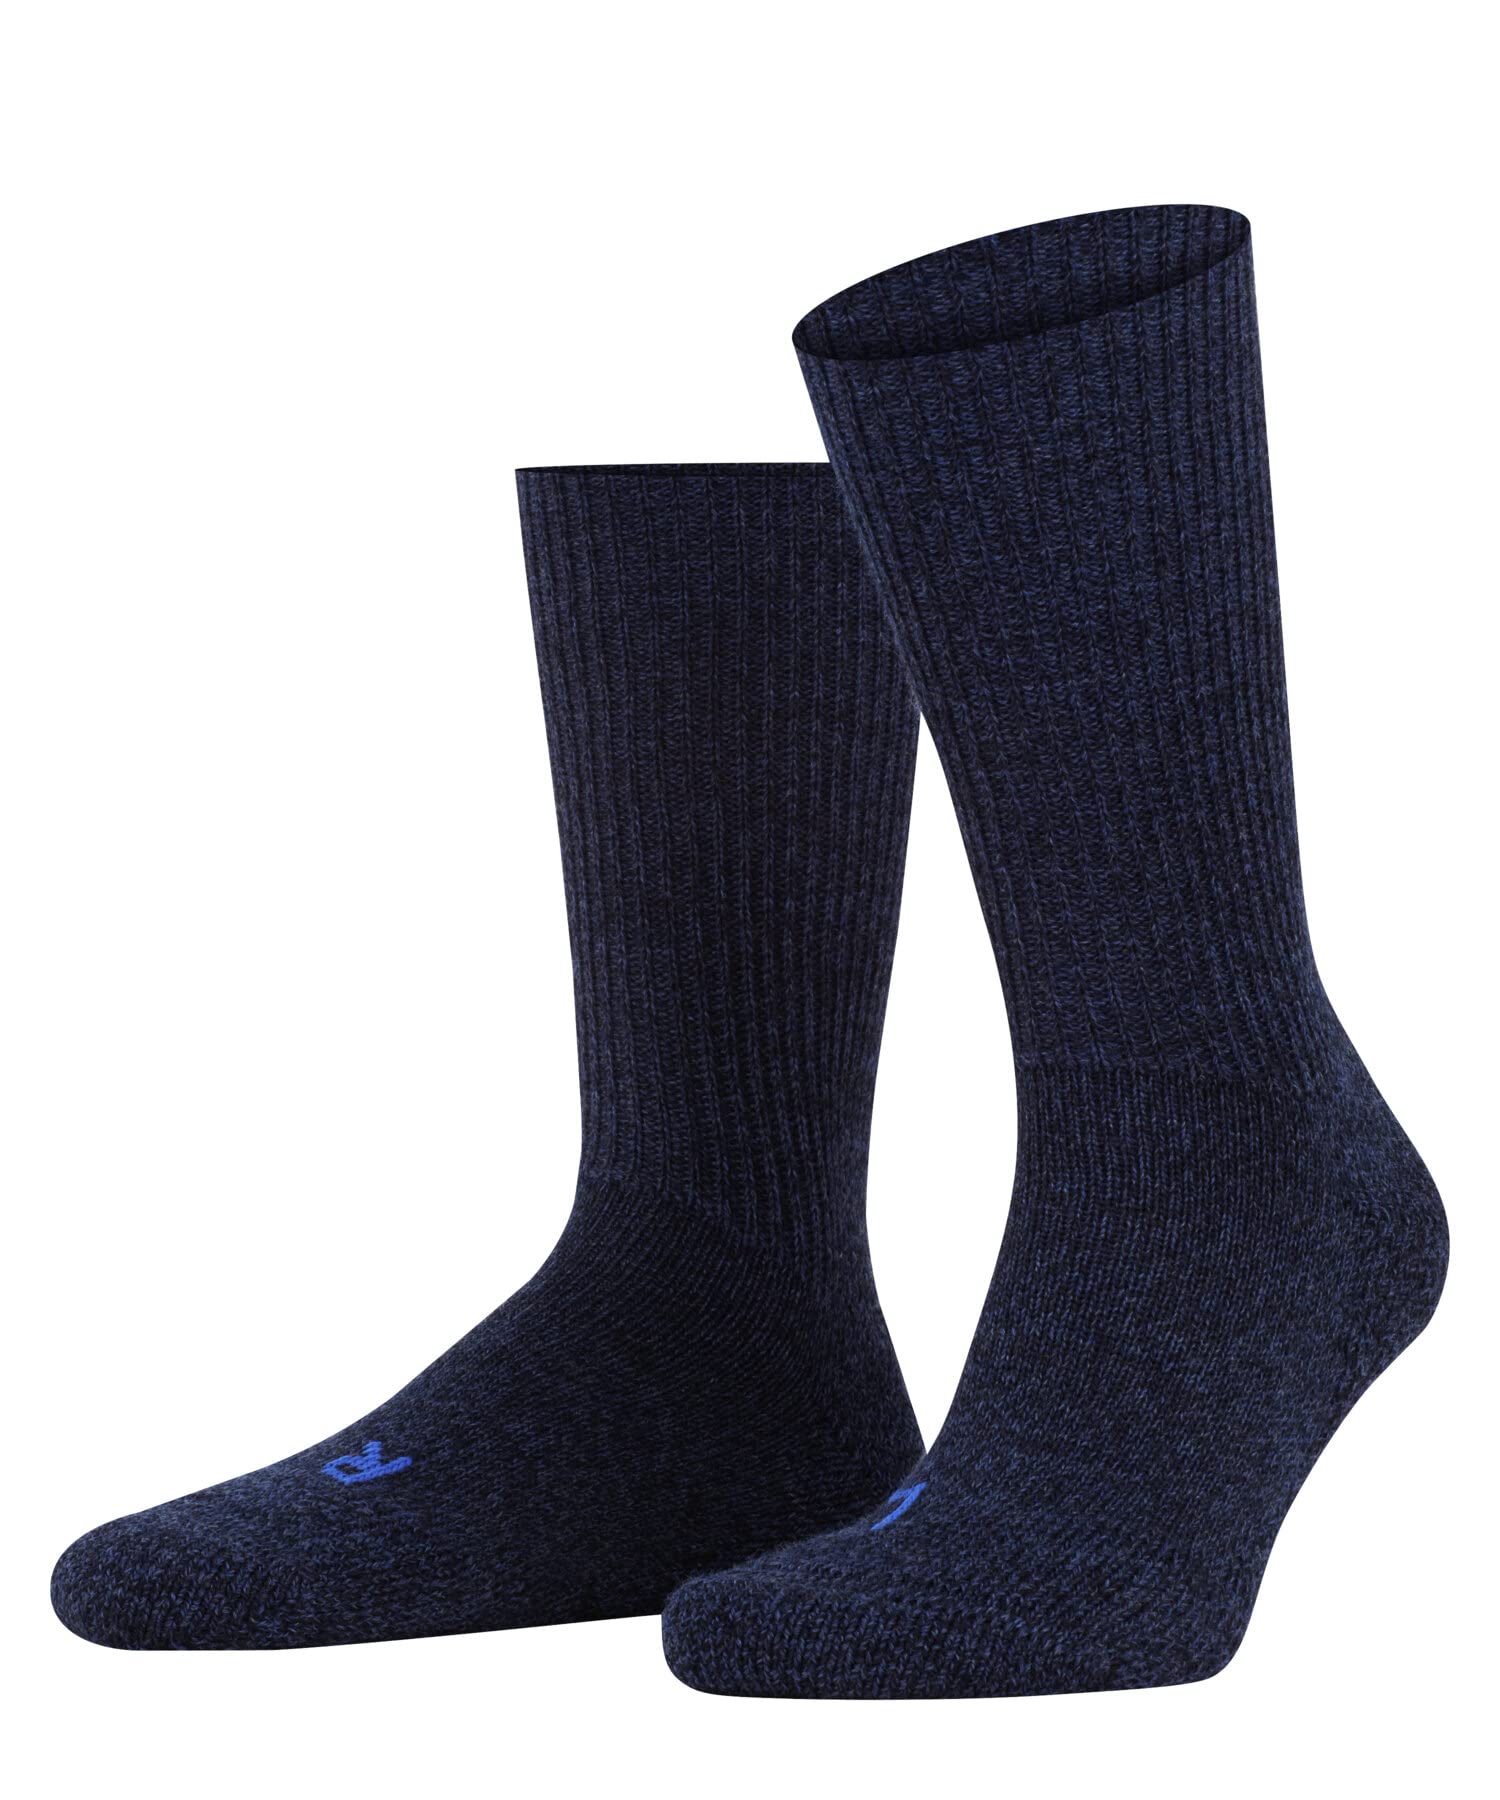 FALKE Unisex Socken Walkie Ergo U SO Wolle einfarbig 1 Paar, Blau (Jeans 6670), 37-38